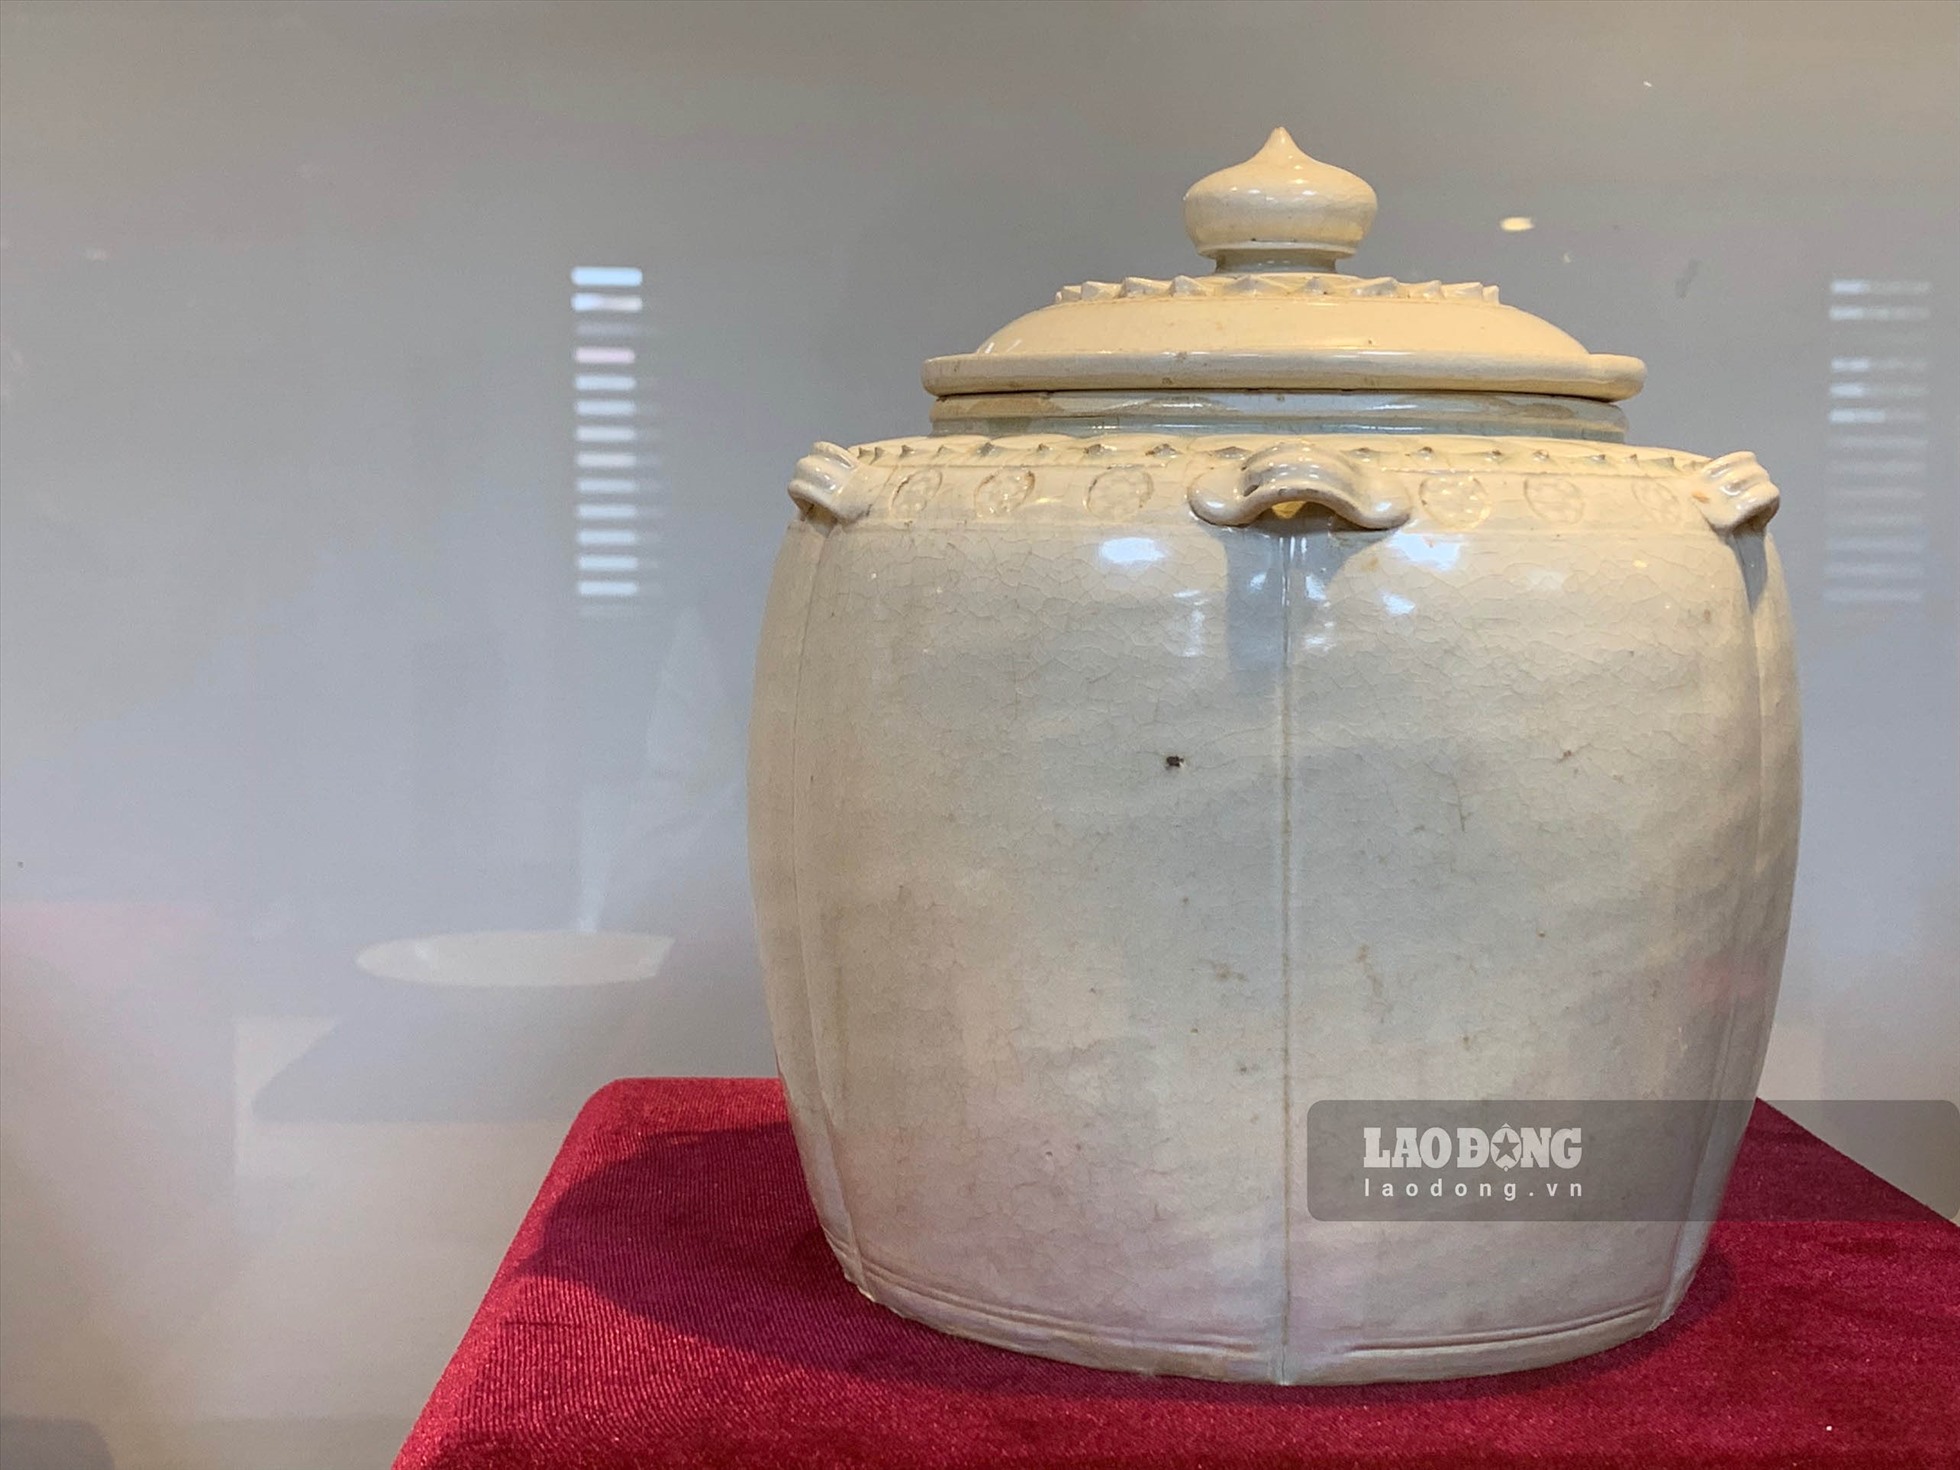 Ngoài 6 hiện vật trên, ông Trần Đình Thăng còn sở hữu 9 hiện vật gốm men trắng, có từ triều Lý gồm: bốn ấm, hai liễn và ba đĩa, được công nhận bảo vật quốc gia ngày 21.12.2021.